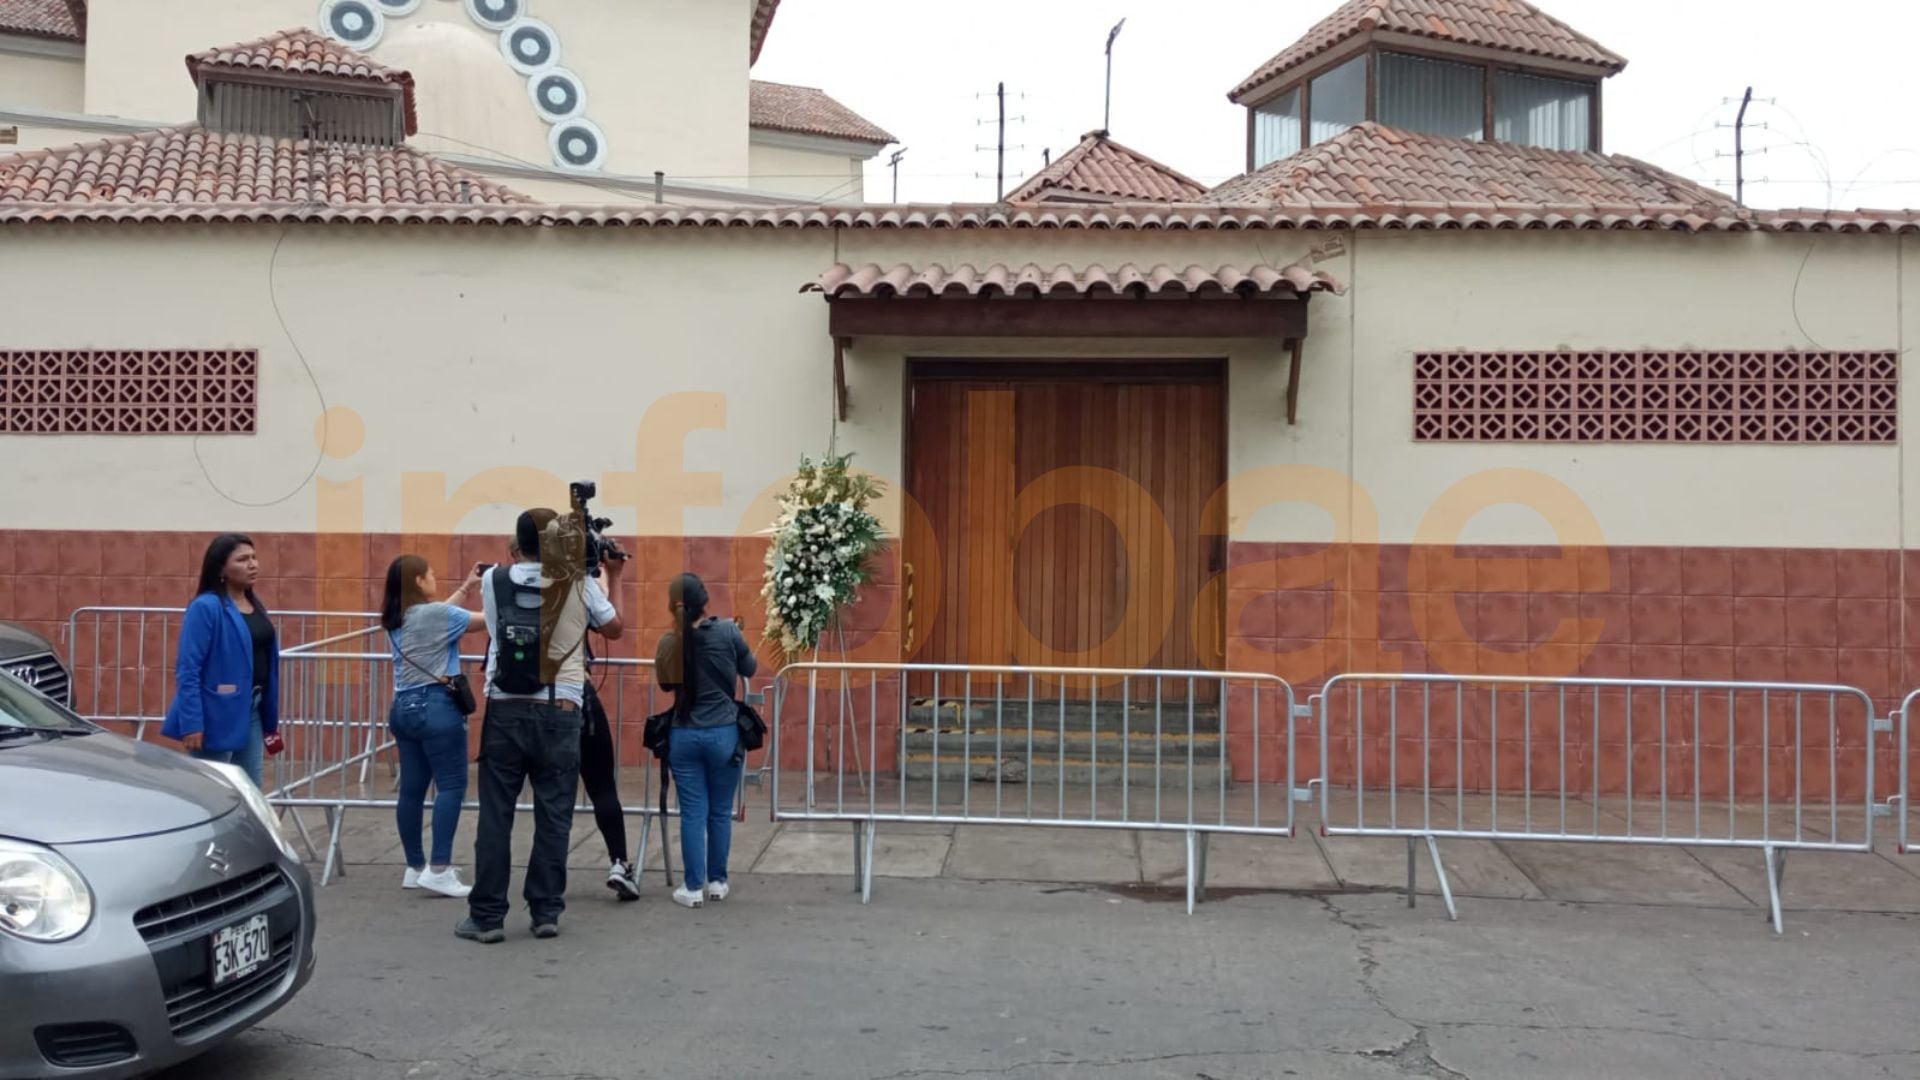 Todo va quedando listo para el velorio de Pedro Suárez Vértiz en el velatorio de la iglesia Vírgen de Fátima de Miraflores | Infobae / Paula Elizalde